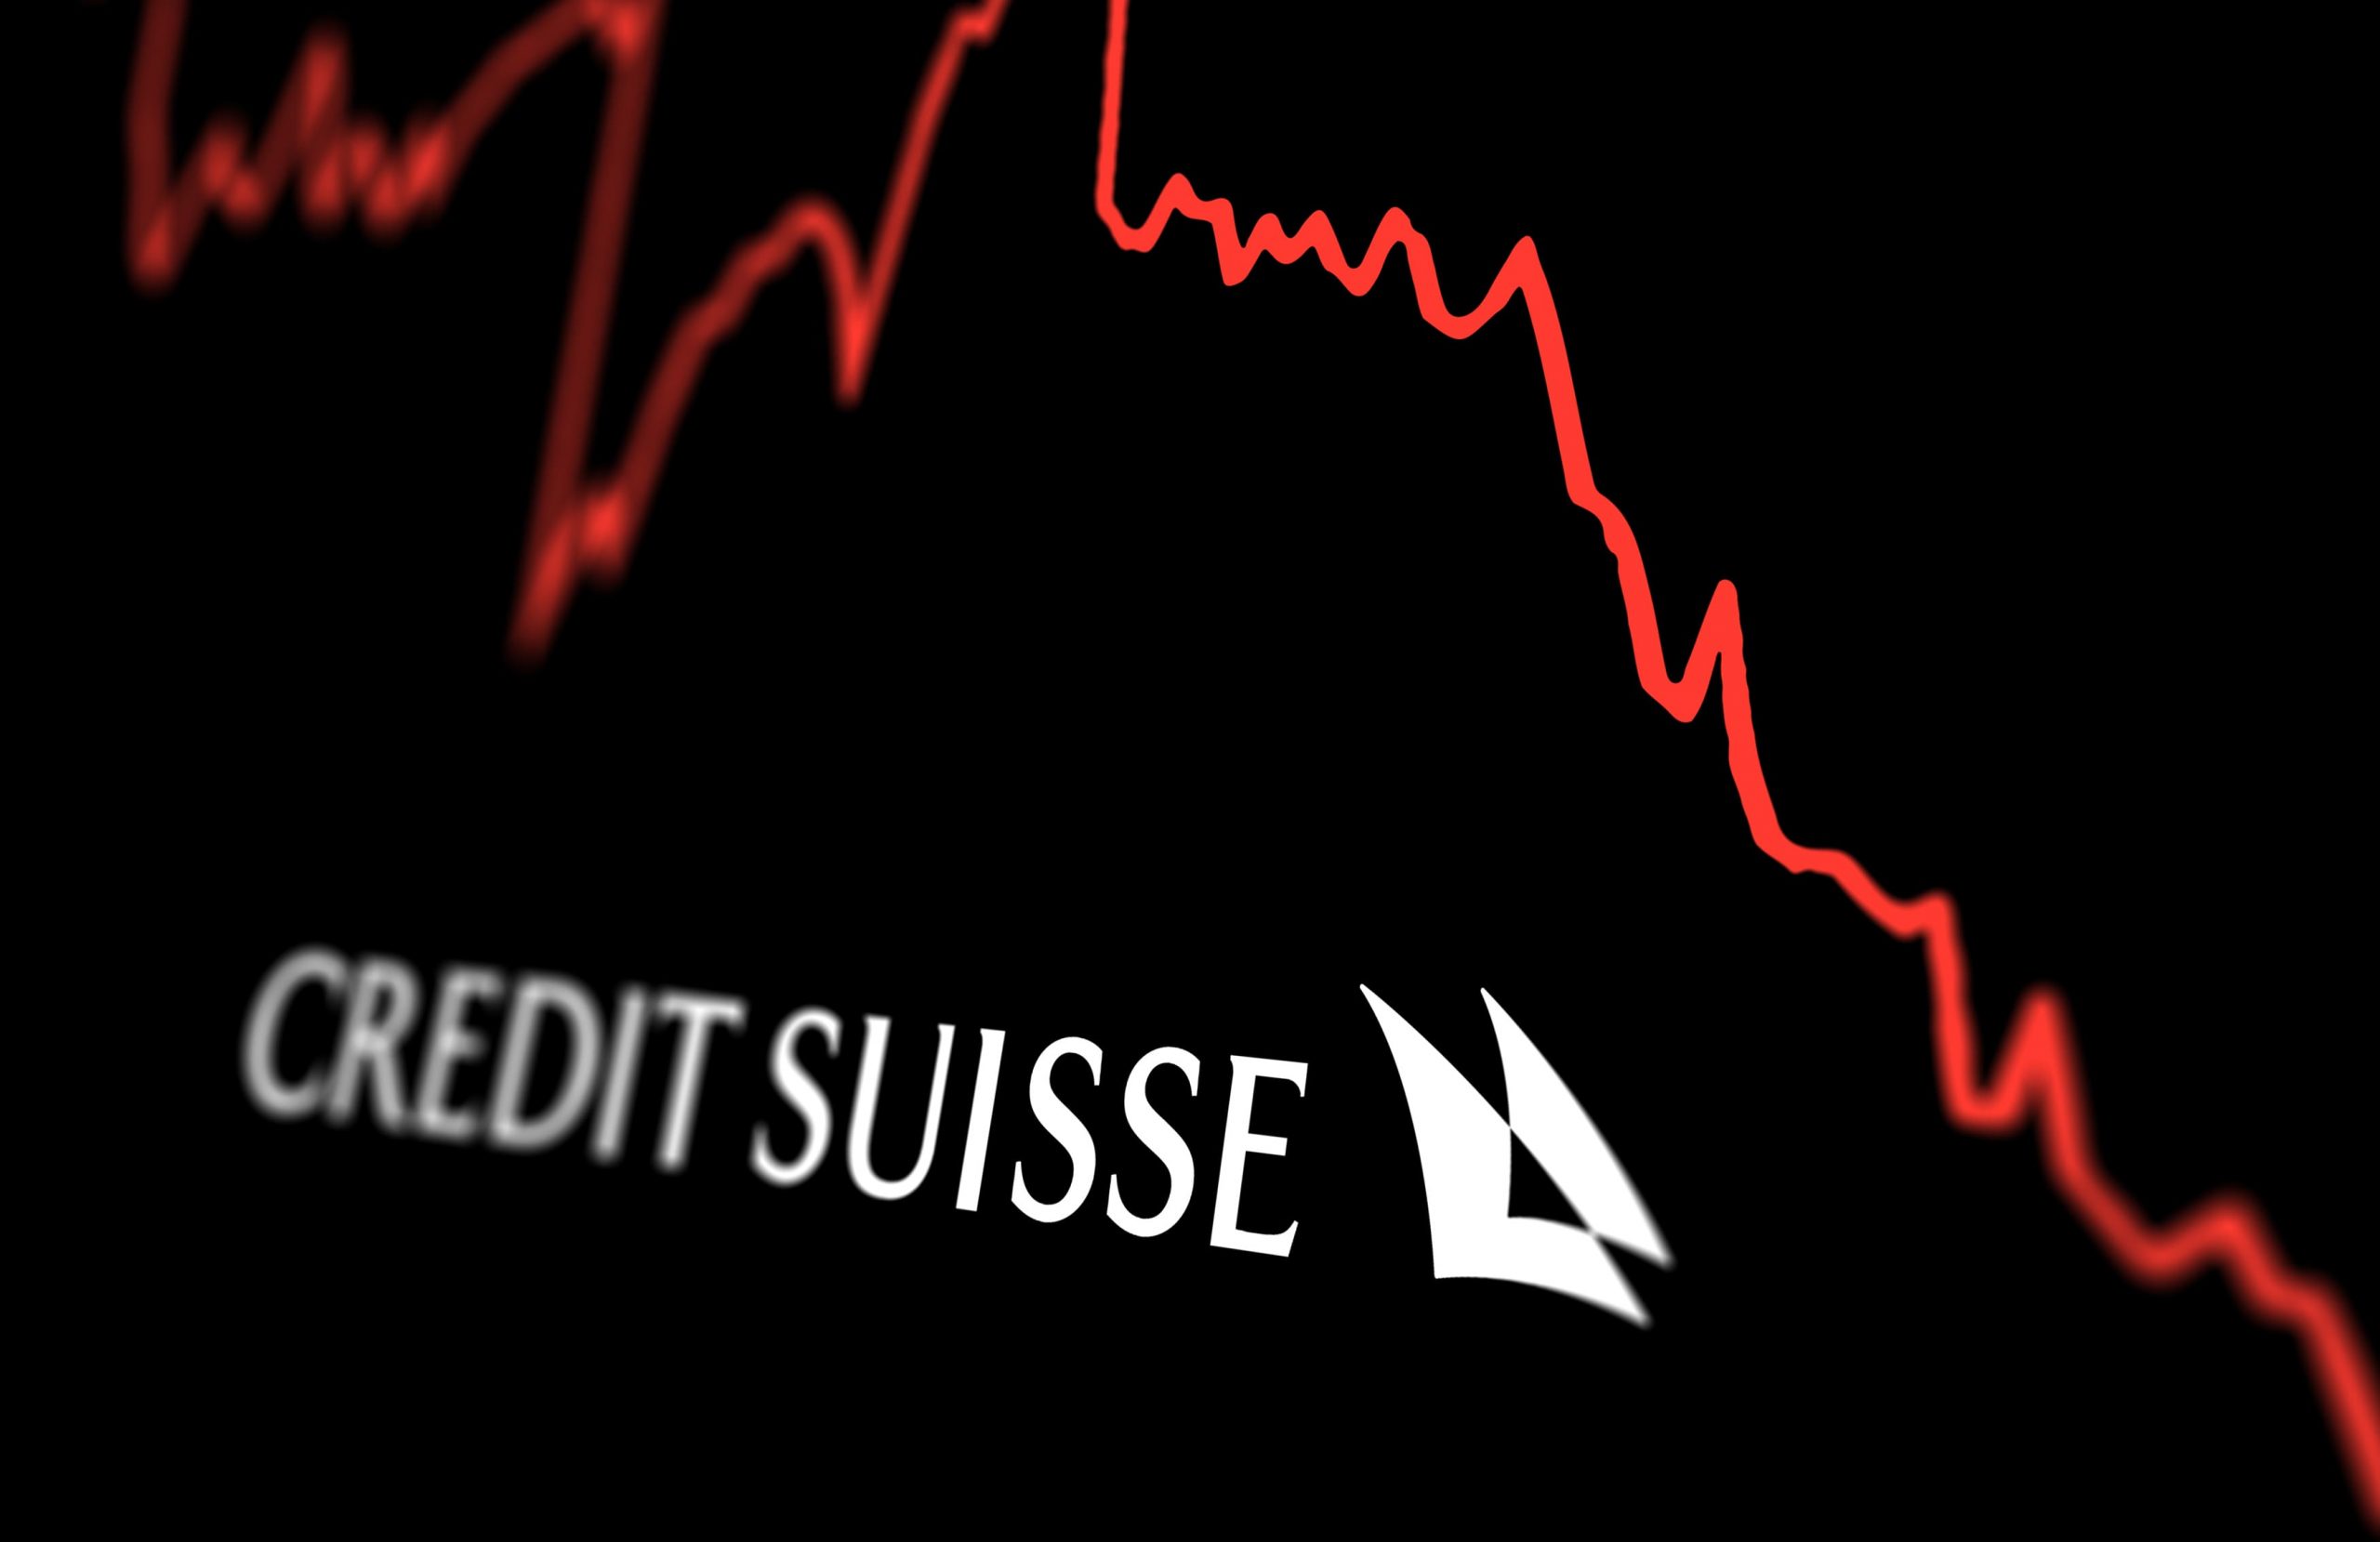 logo du crédit suisse avec une courbe rouge descendante